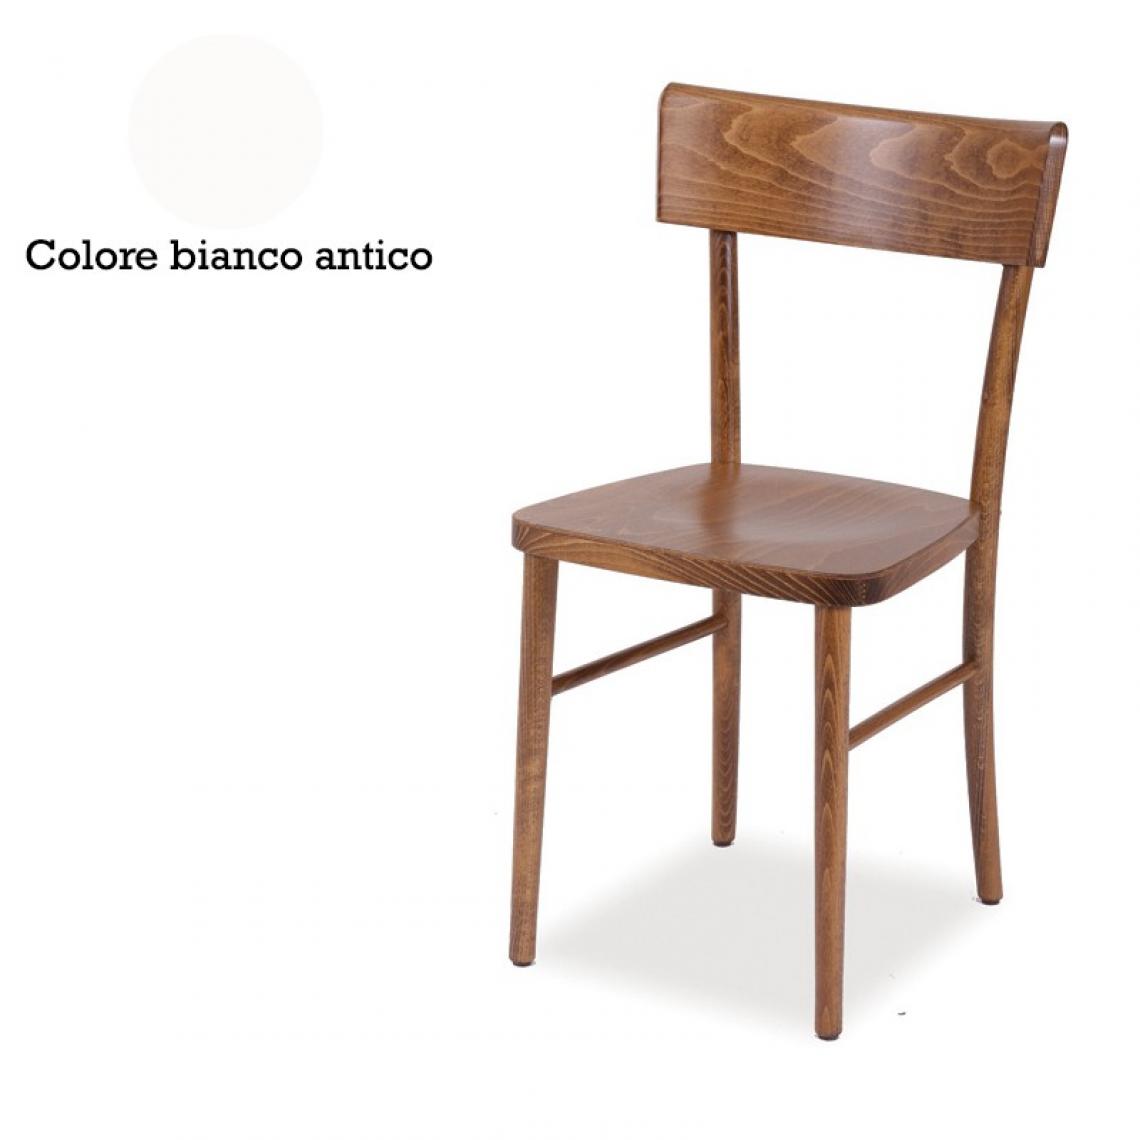 Webmarketpoint - Chaise en bois de hêtre brut courbé, coloris blanc antique 40x42xh.81 cm - Chaises